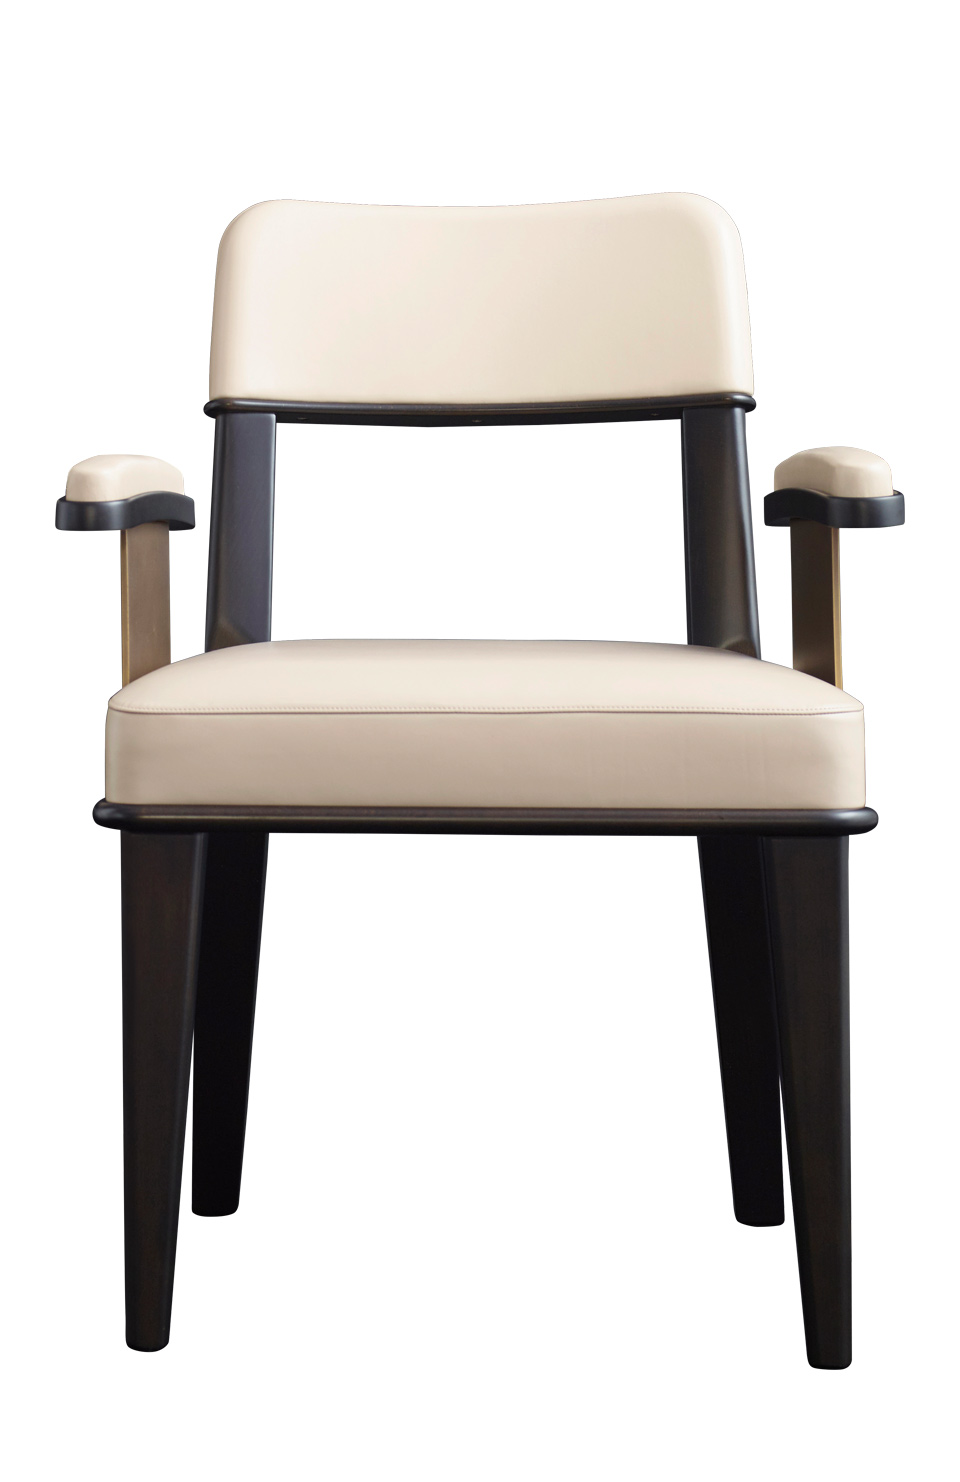 Vespertine est une chaise de salle à manger en bois avec assise et dossier en cuir et finitions en bronze, avec ou sans accoudoirs. Ce meuble fait partie de la collection « Night Tales » de Promemoria | Promemoria